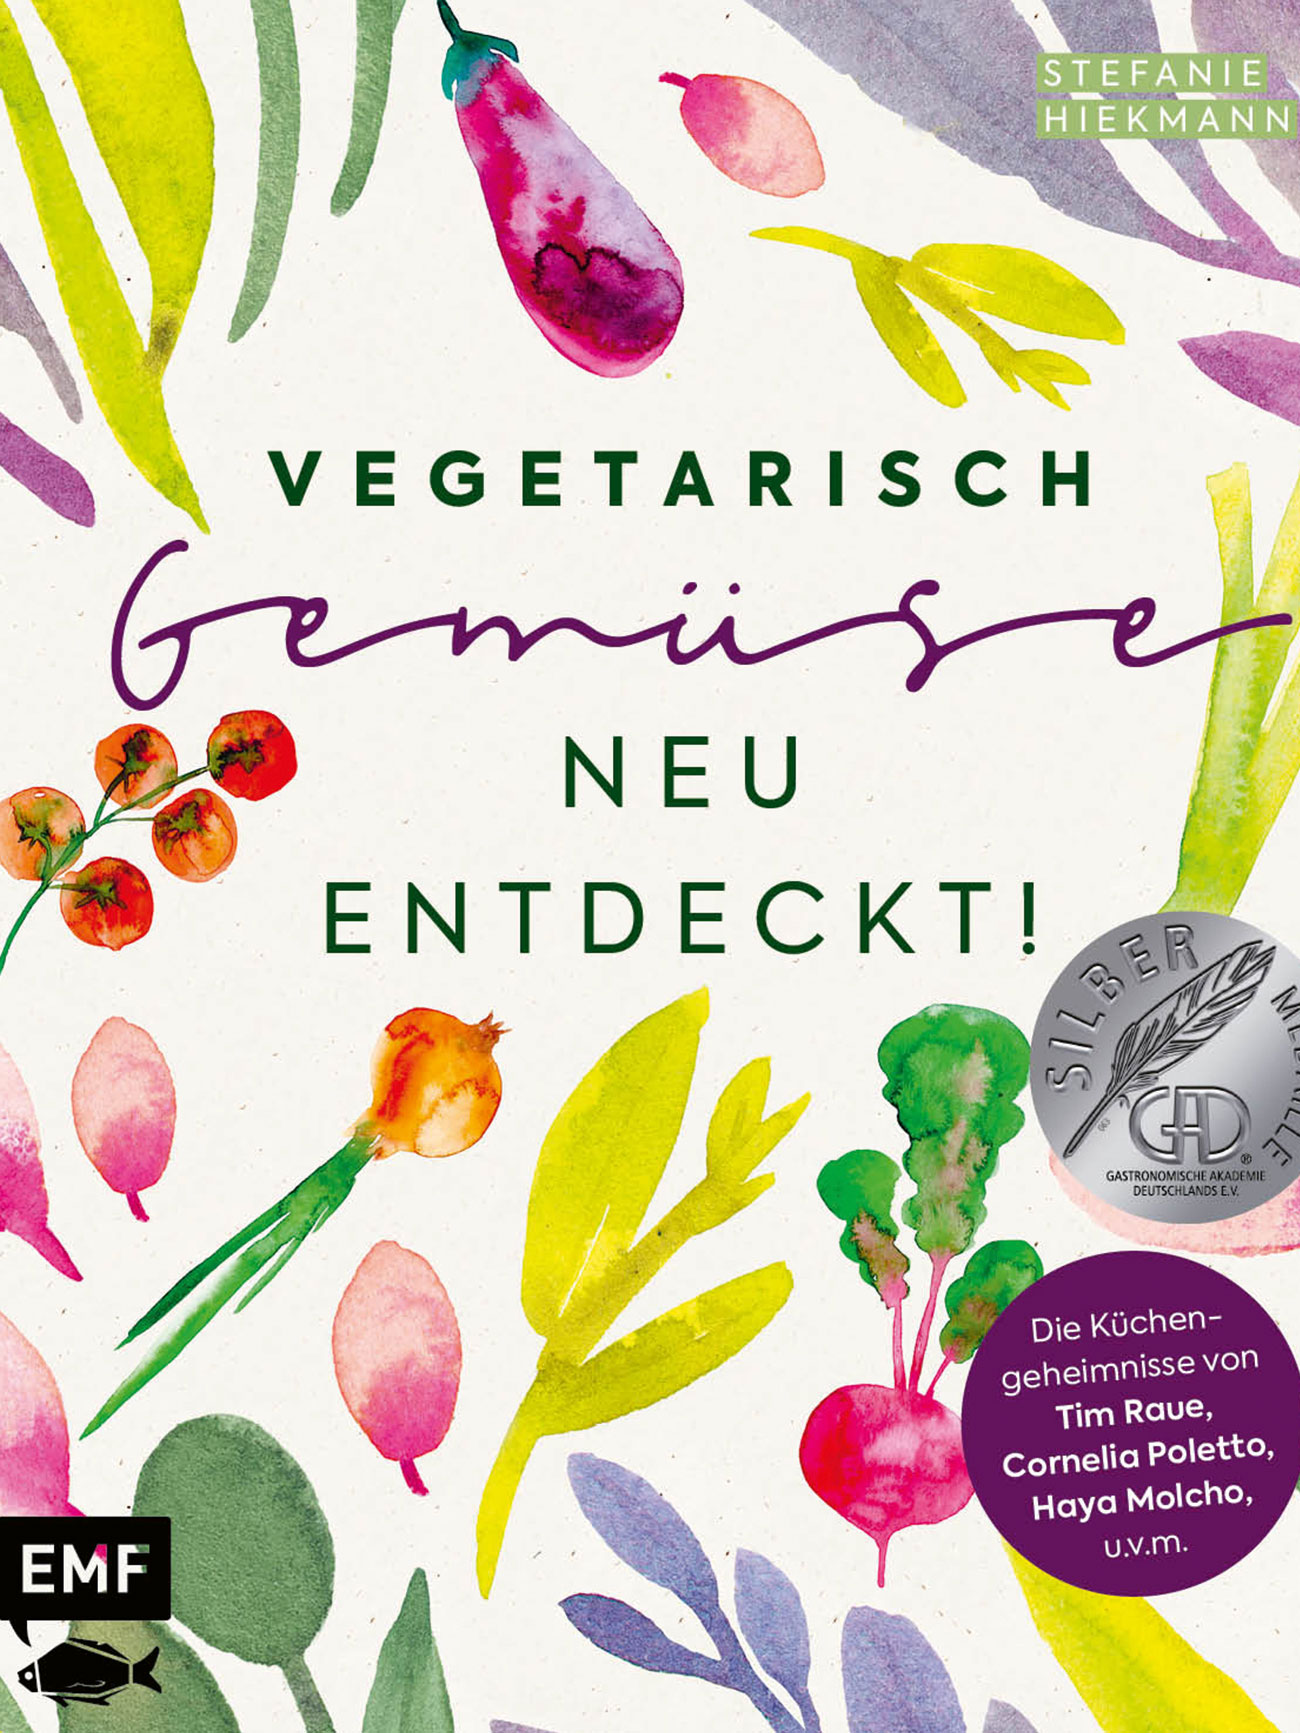 Stefanie Hiekmann Vegetarisch Gemüse neu entdeckt